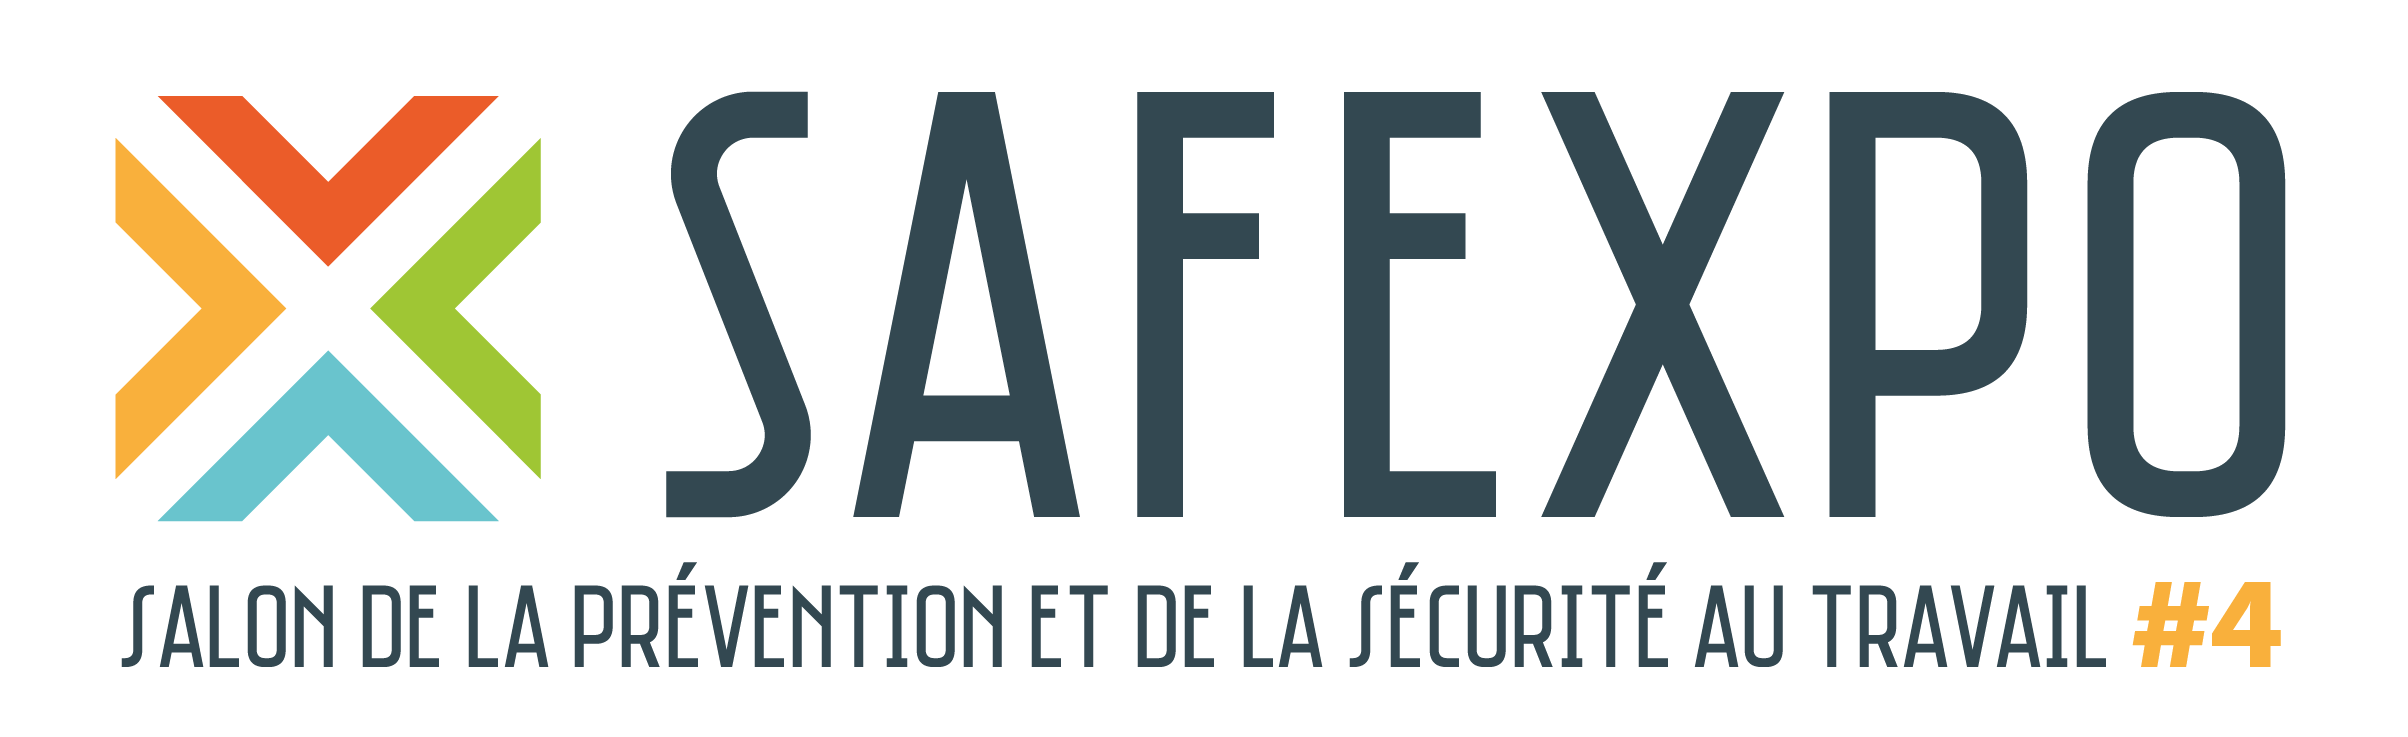 Safexpo logo